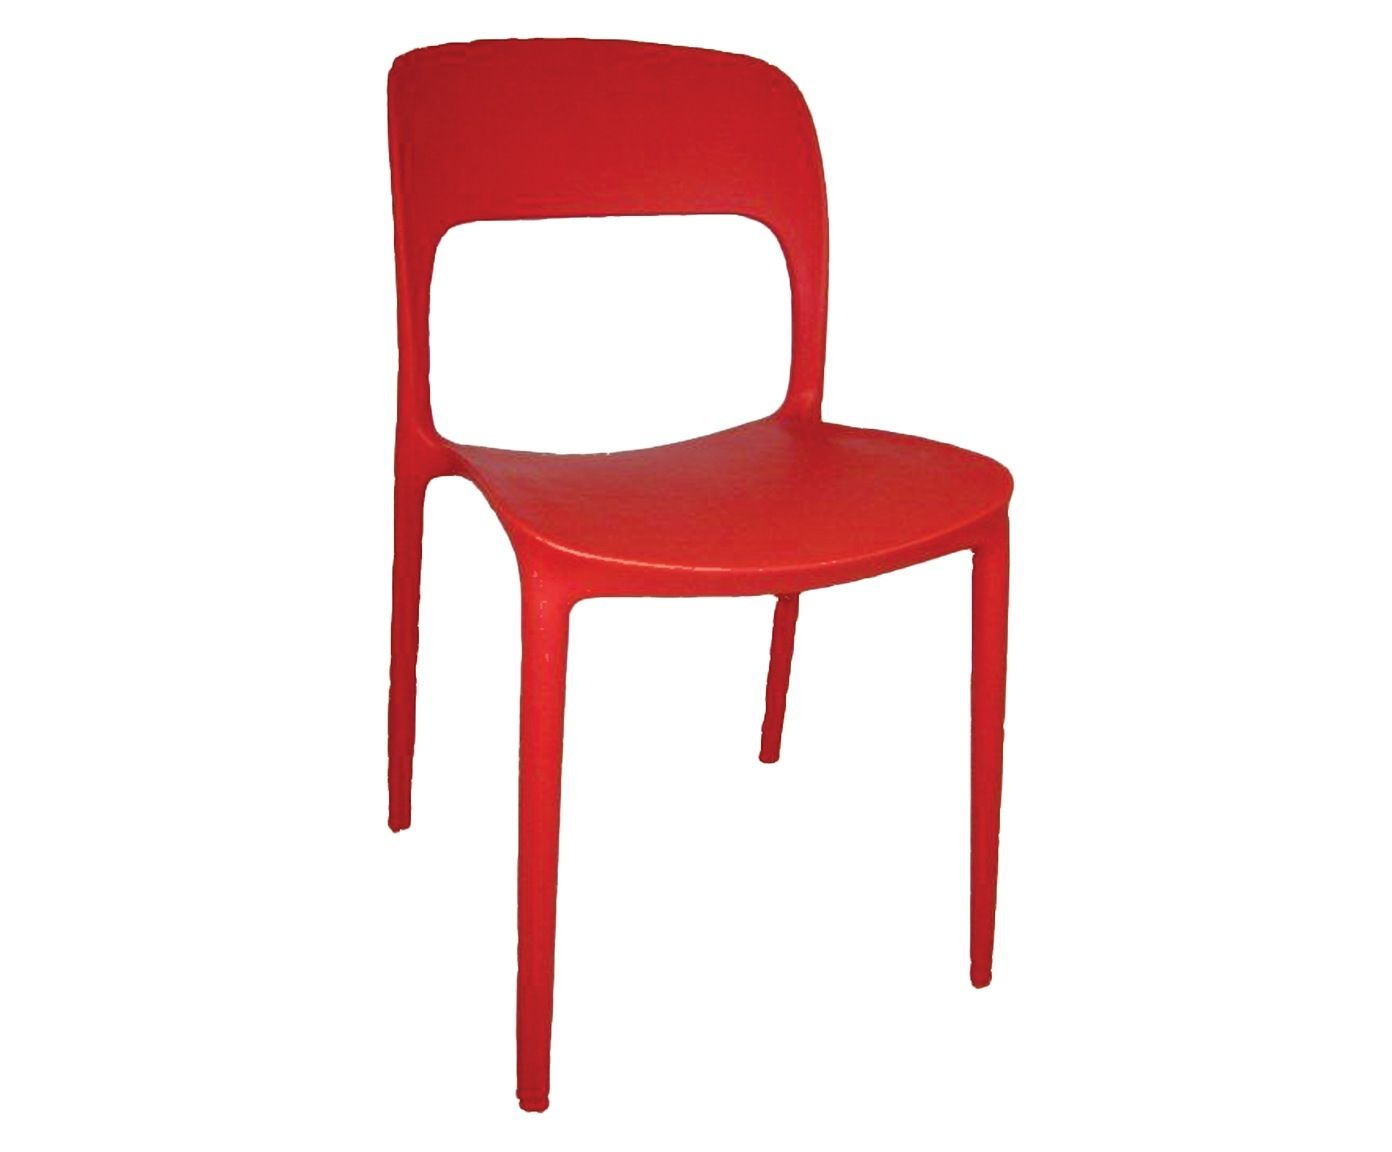 Cadeira california - rama | Westwing.com.br